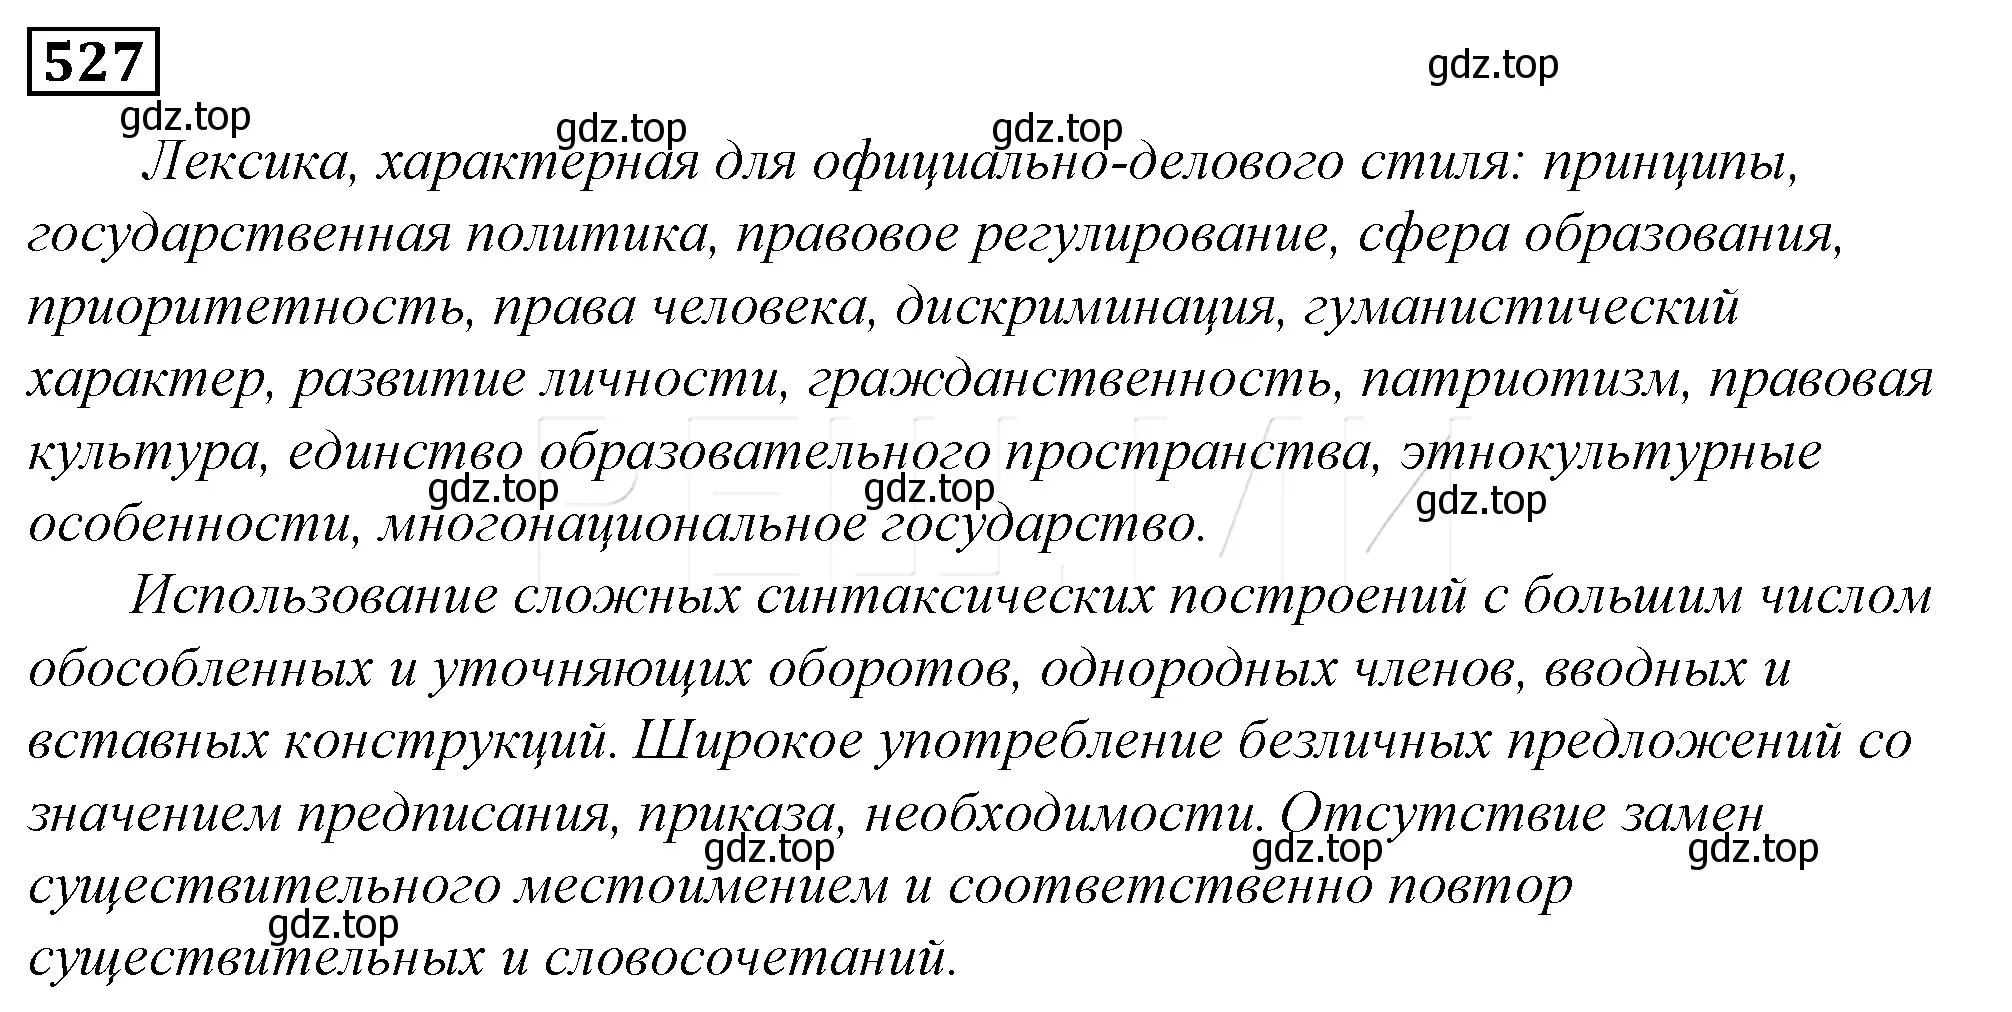 Решение 4. номер 202 (страница 279) гдз по русскому языку 10-11 класс Гольцова, Шамшин, учебник 2 часть